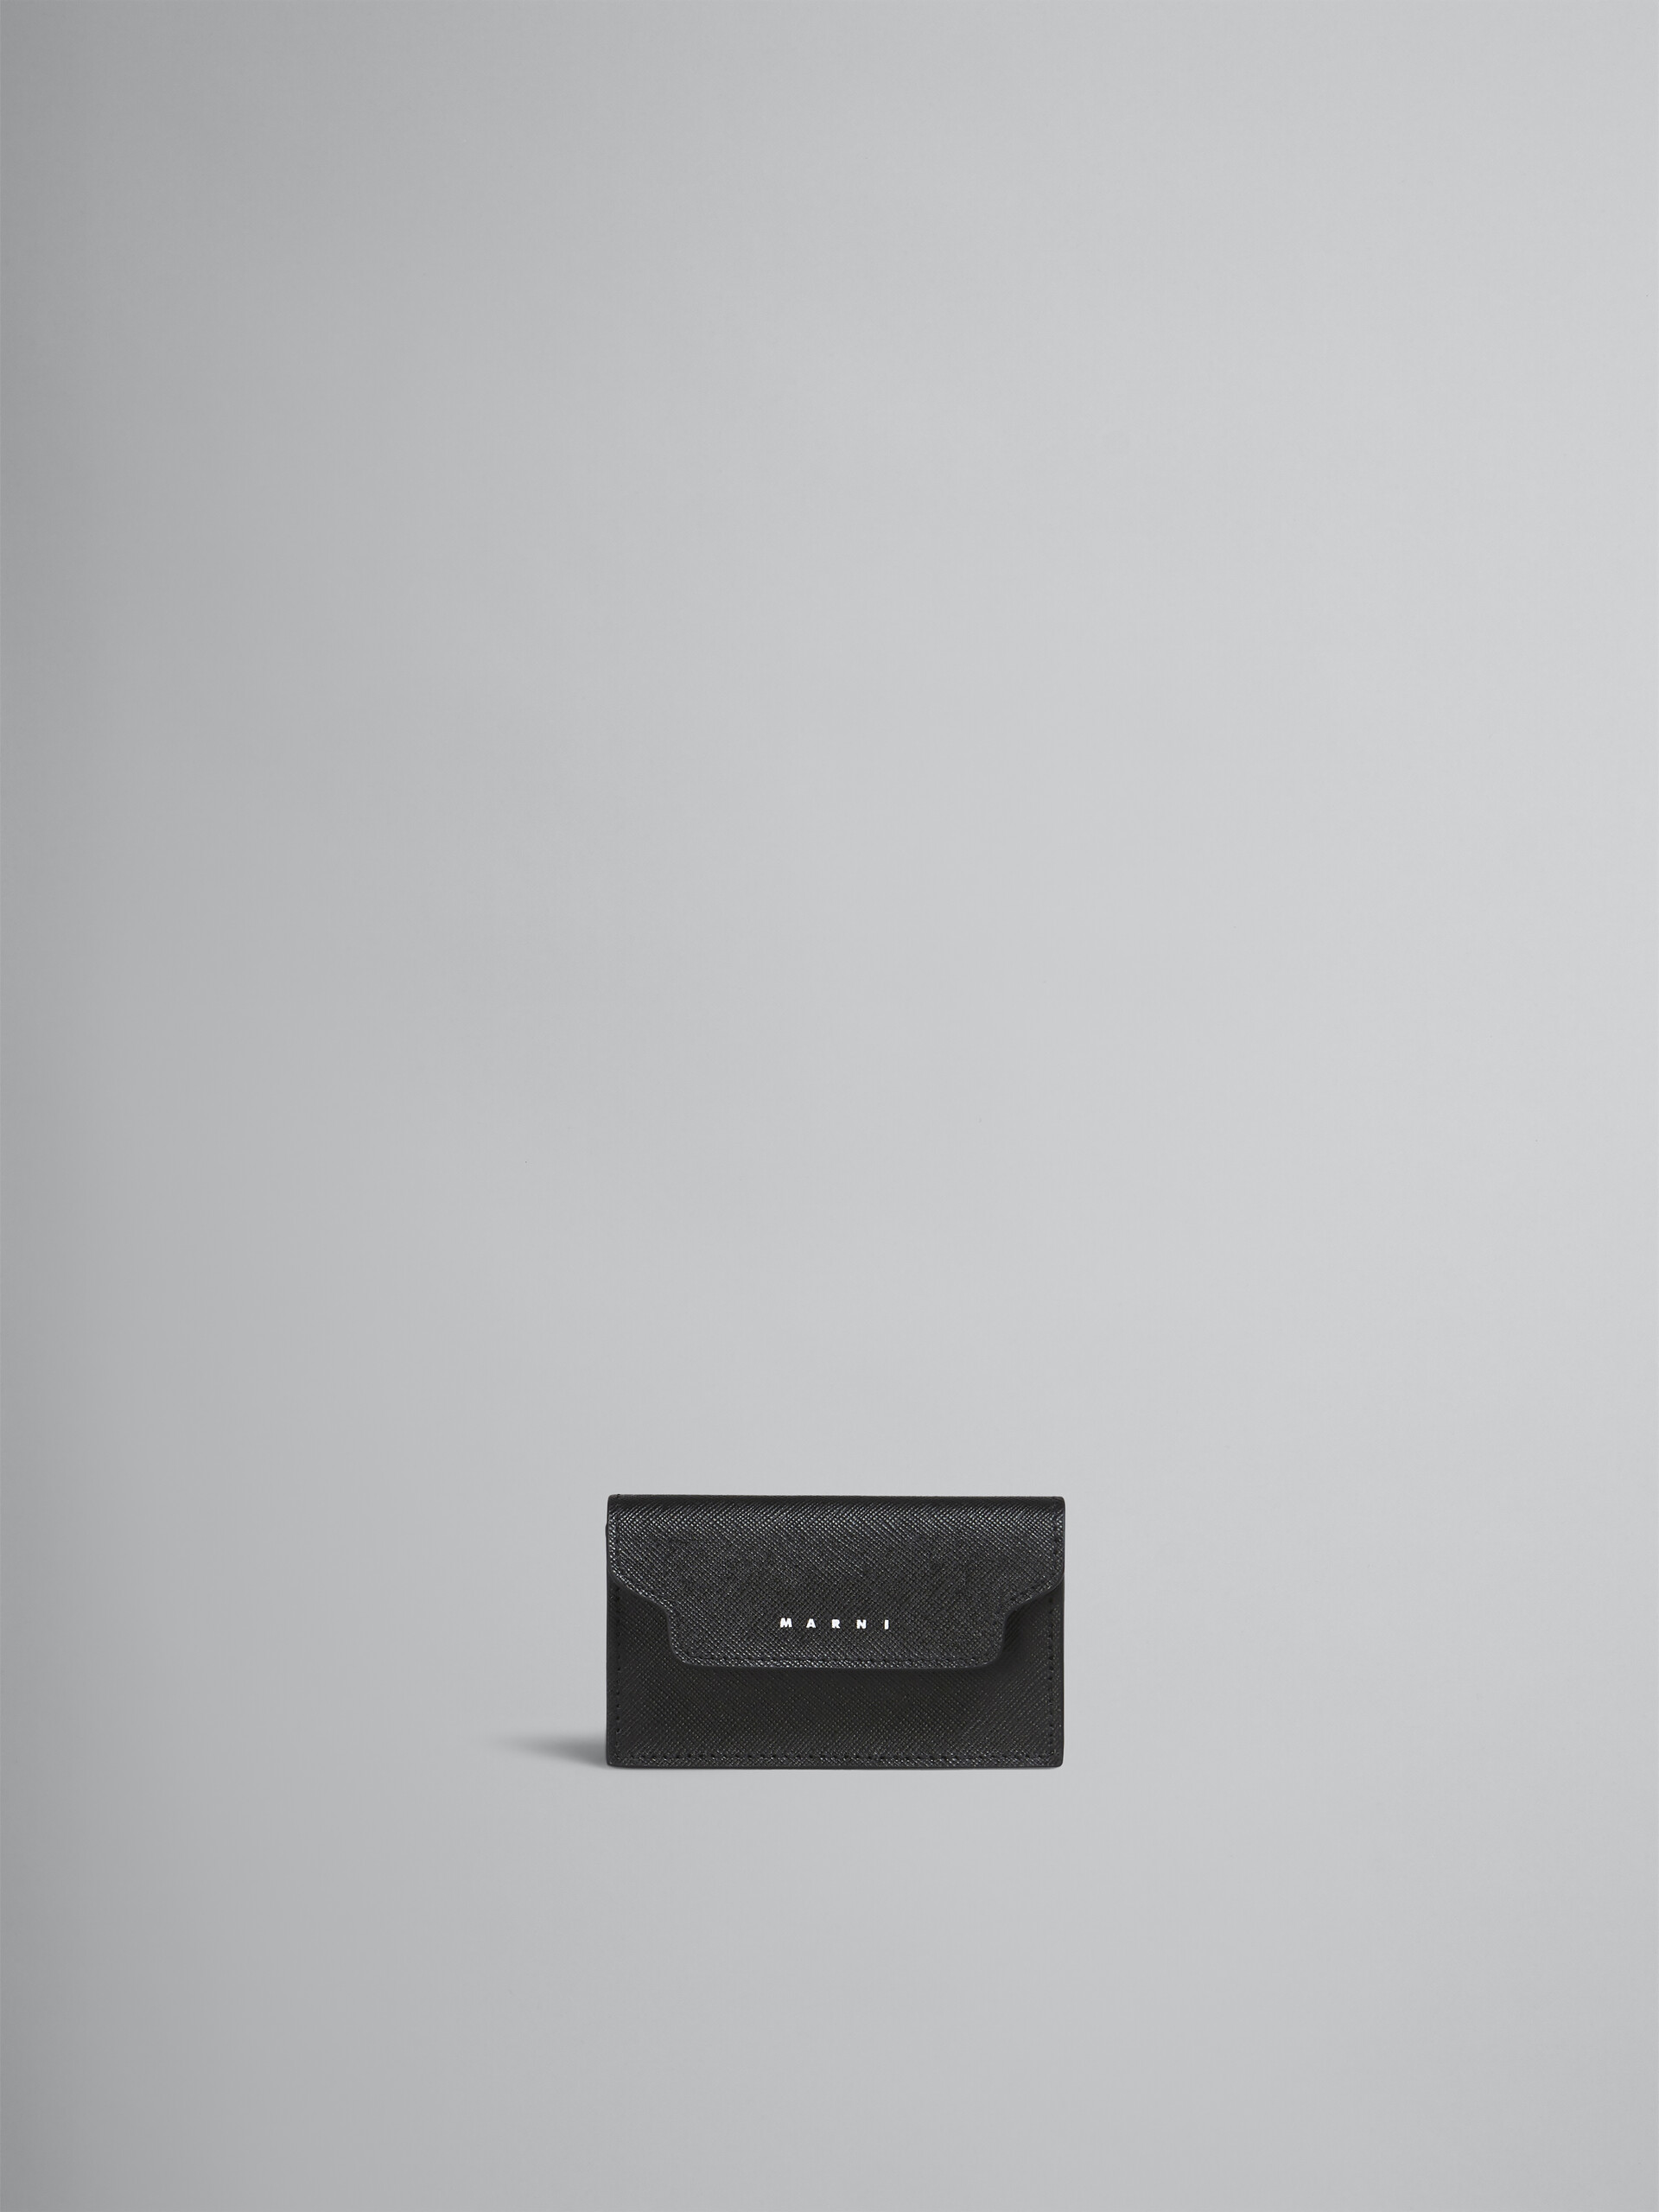 サフィアーノカーフスキン ビジネスカードホルダー ブラック - 財布 - Image 1